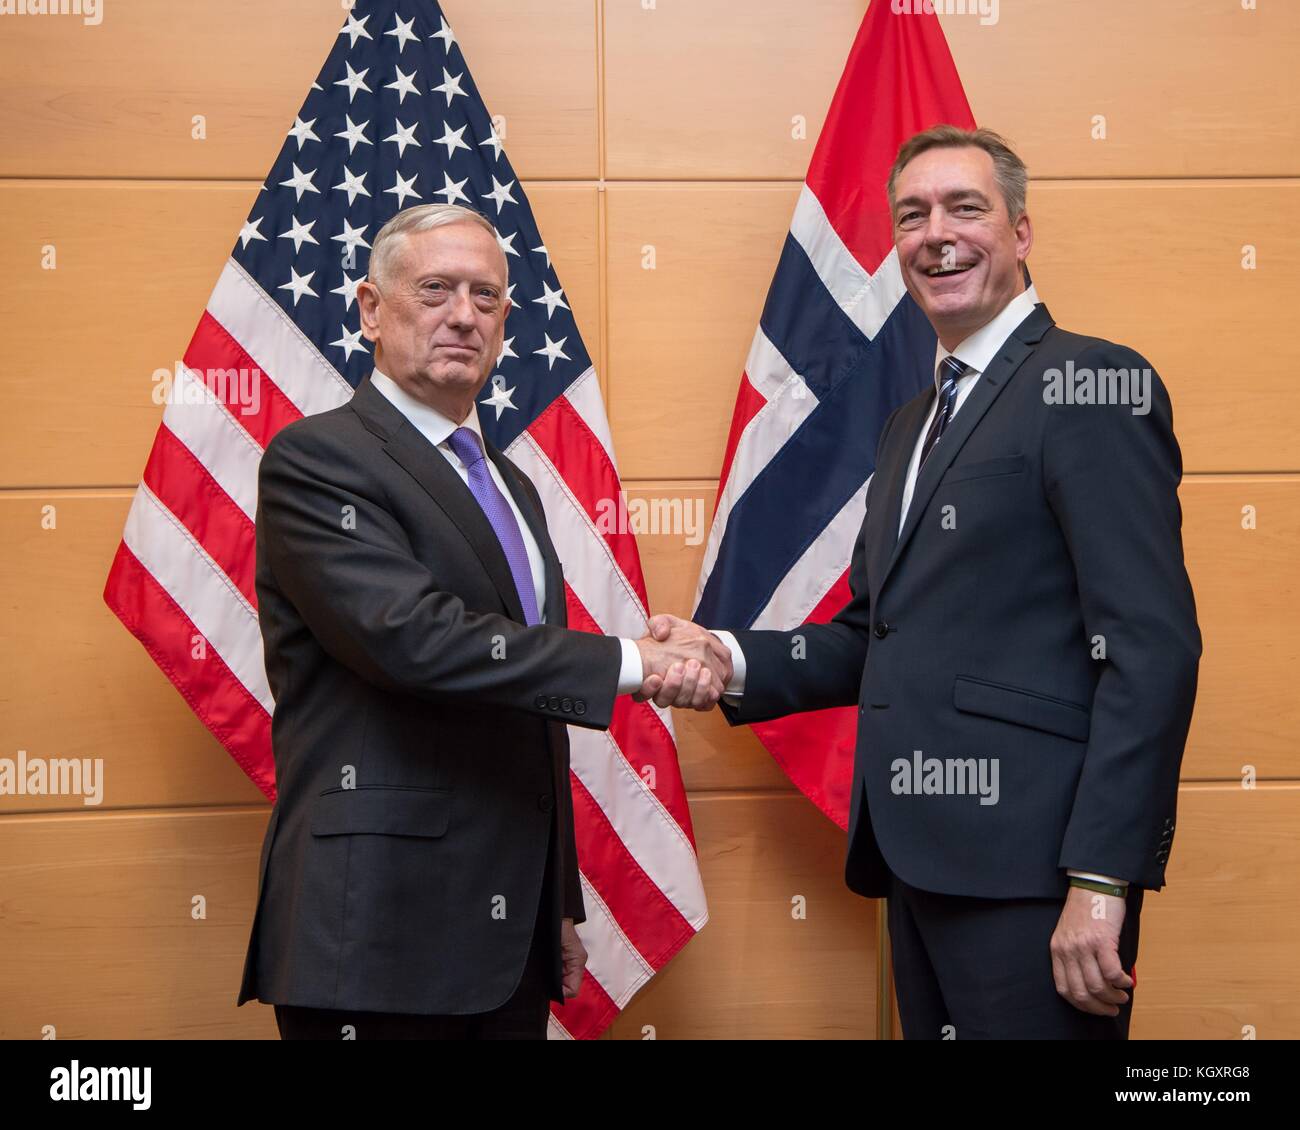 Le secrétaire à la défense américain James Mattis (à gauche) rencontre avec le ministre de la défense norvégien frank bakke-jensen au quartier général de l'OTAN le 8 novembre 2017 à Bruxelles, Belgique. (Photo par jette carr par planetpix) Banque D'Images